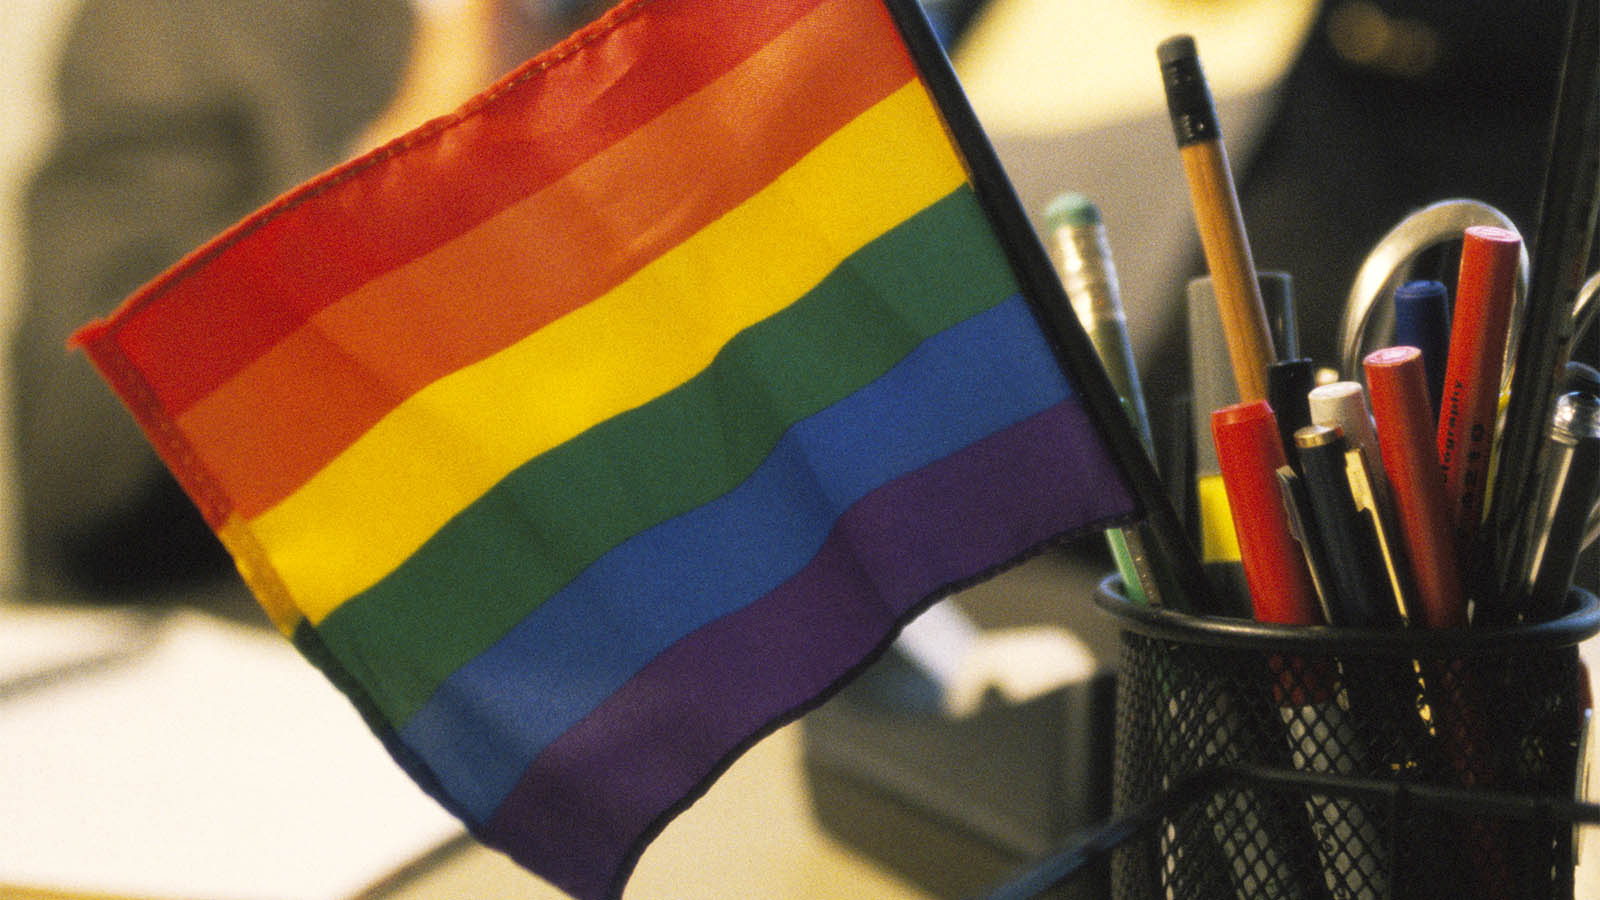 דגל גאווה על שולחן משרד (צילום: Ron Chapple / gettyimages).